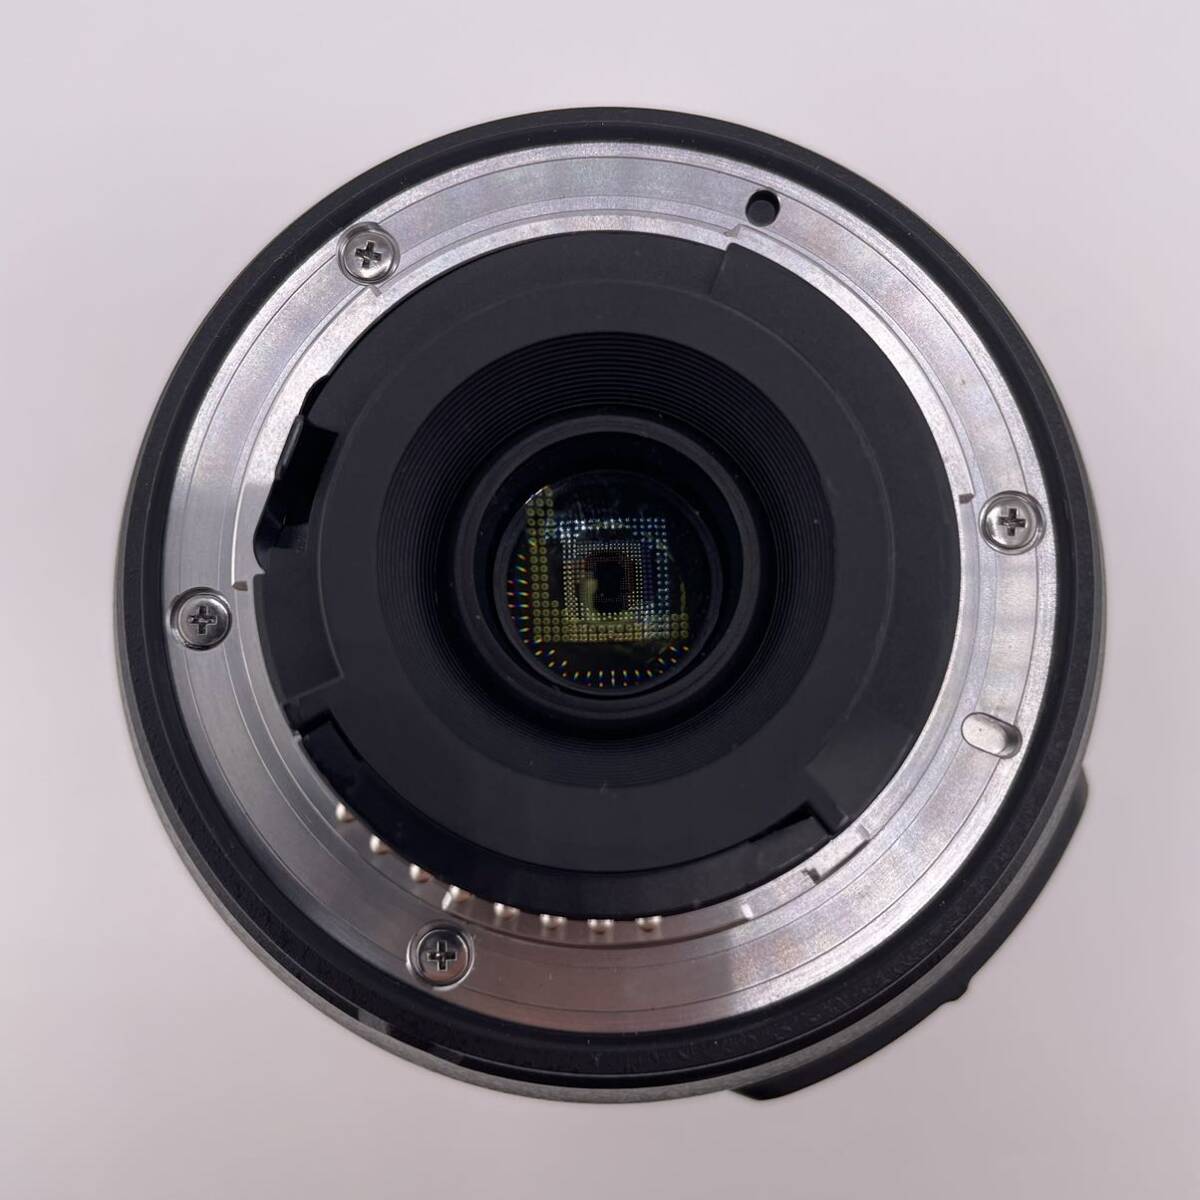 Nikon DX AF-S NIKKOR 55-300mm 1:4.5-5.6 G ED レンズ カメラレンズ ニコン ソフトケース【S30393-675】_画像7